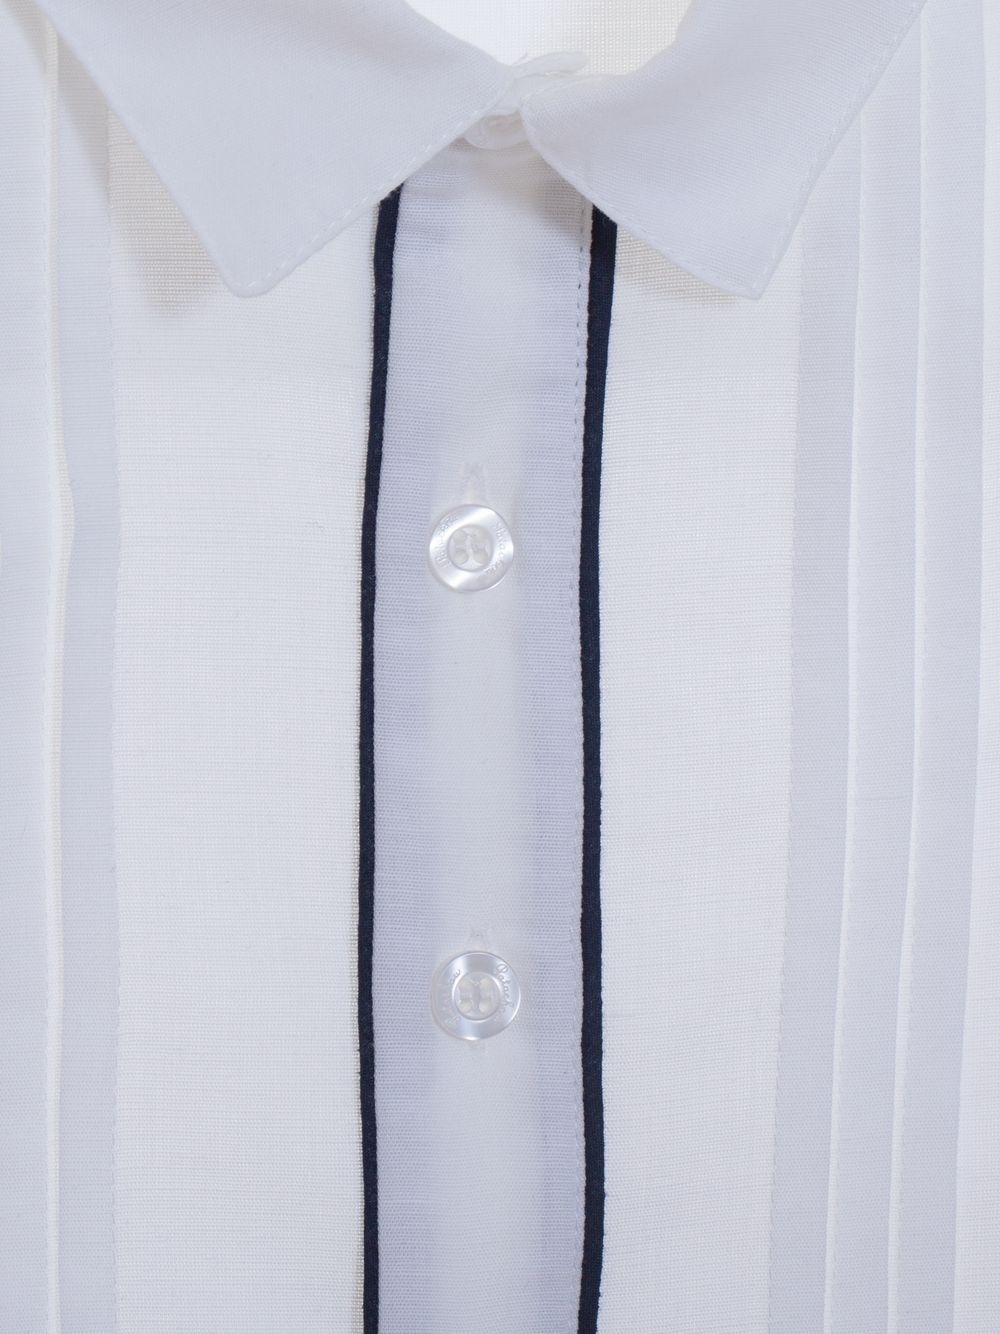 Camisa de linho branco com detalhes em azul marinho